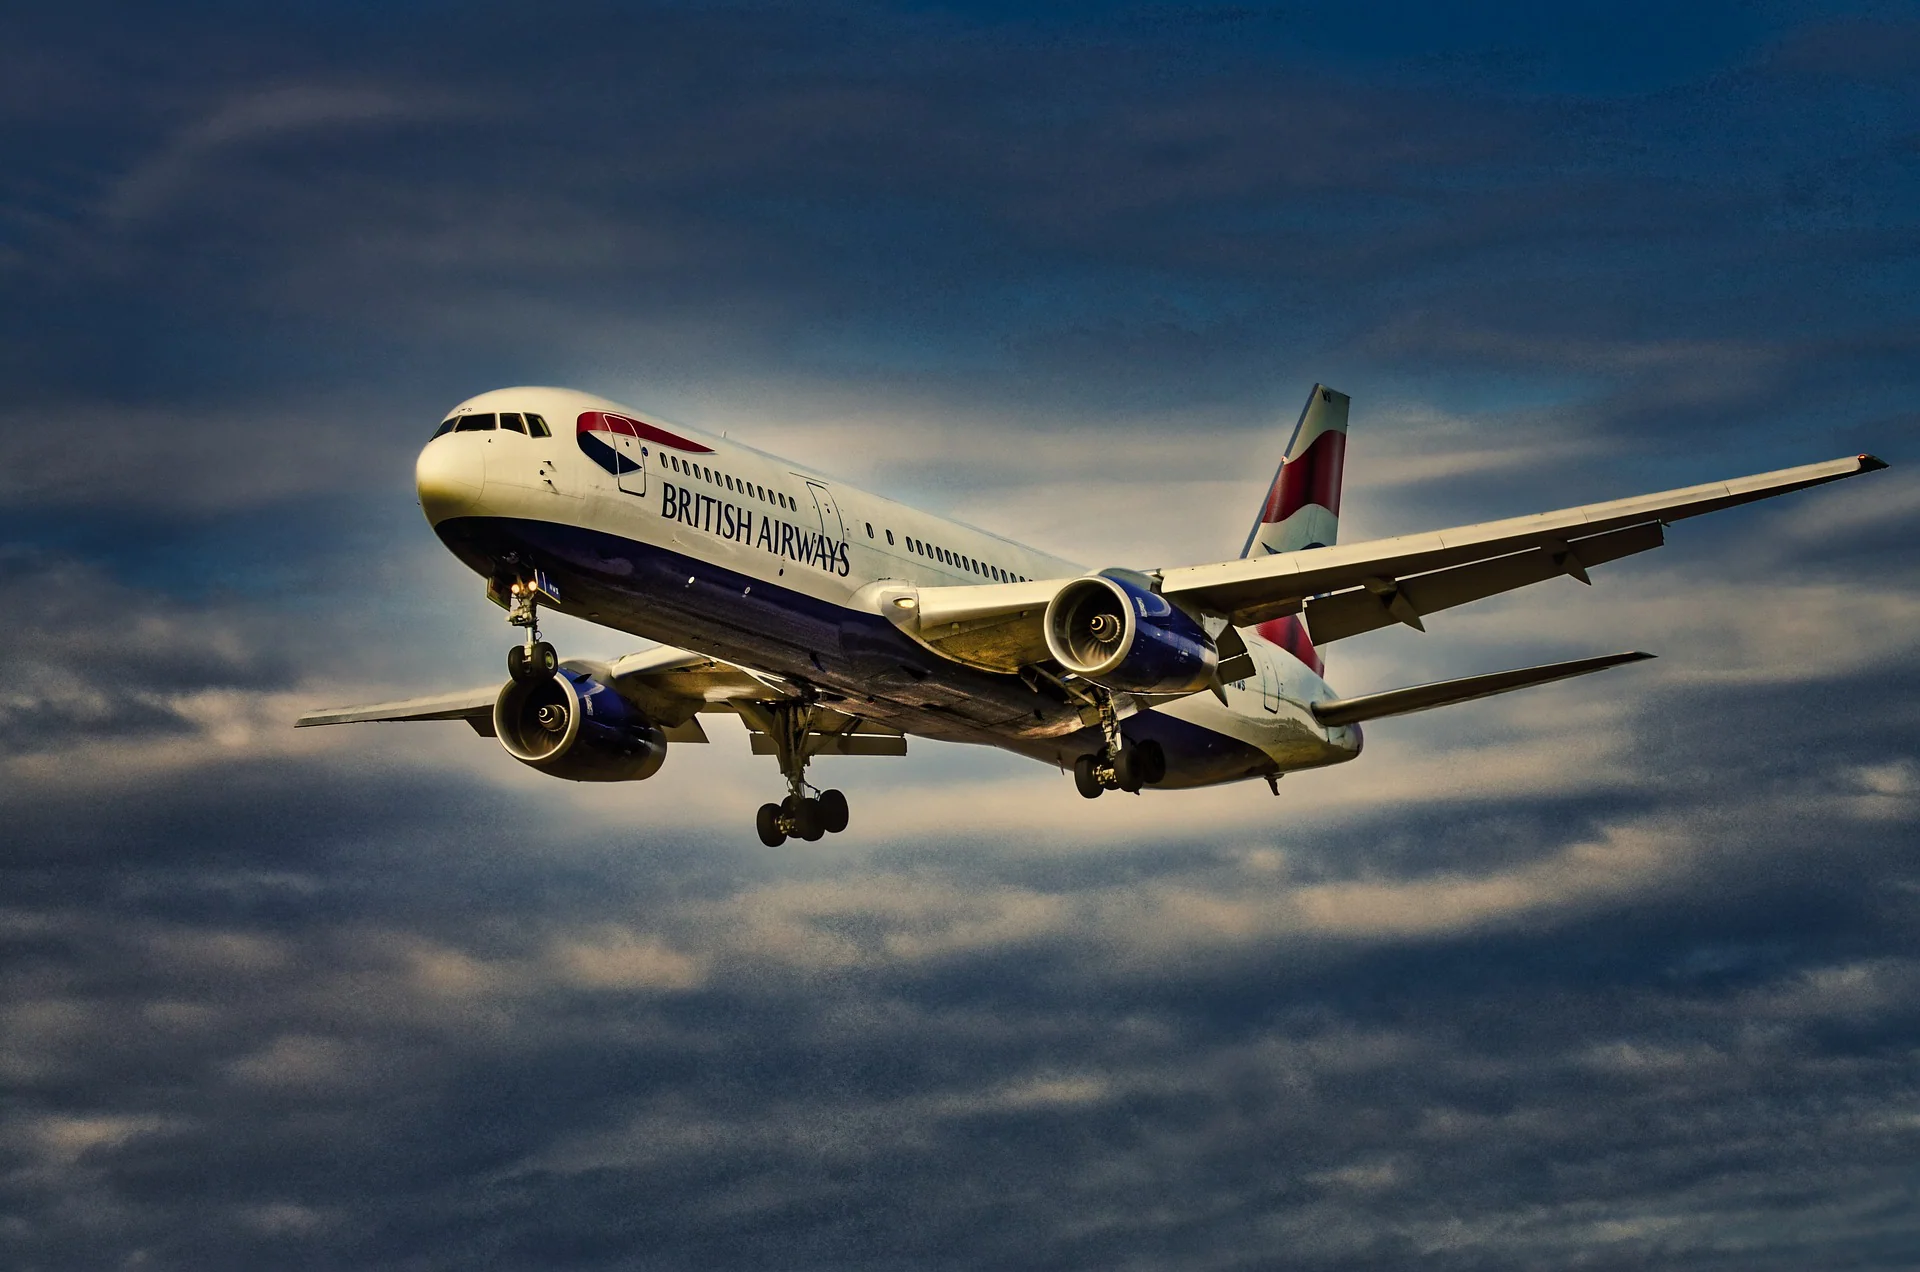 British Airways - Flight to S. Africa